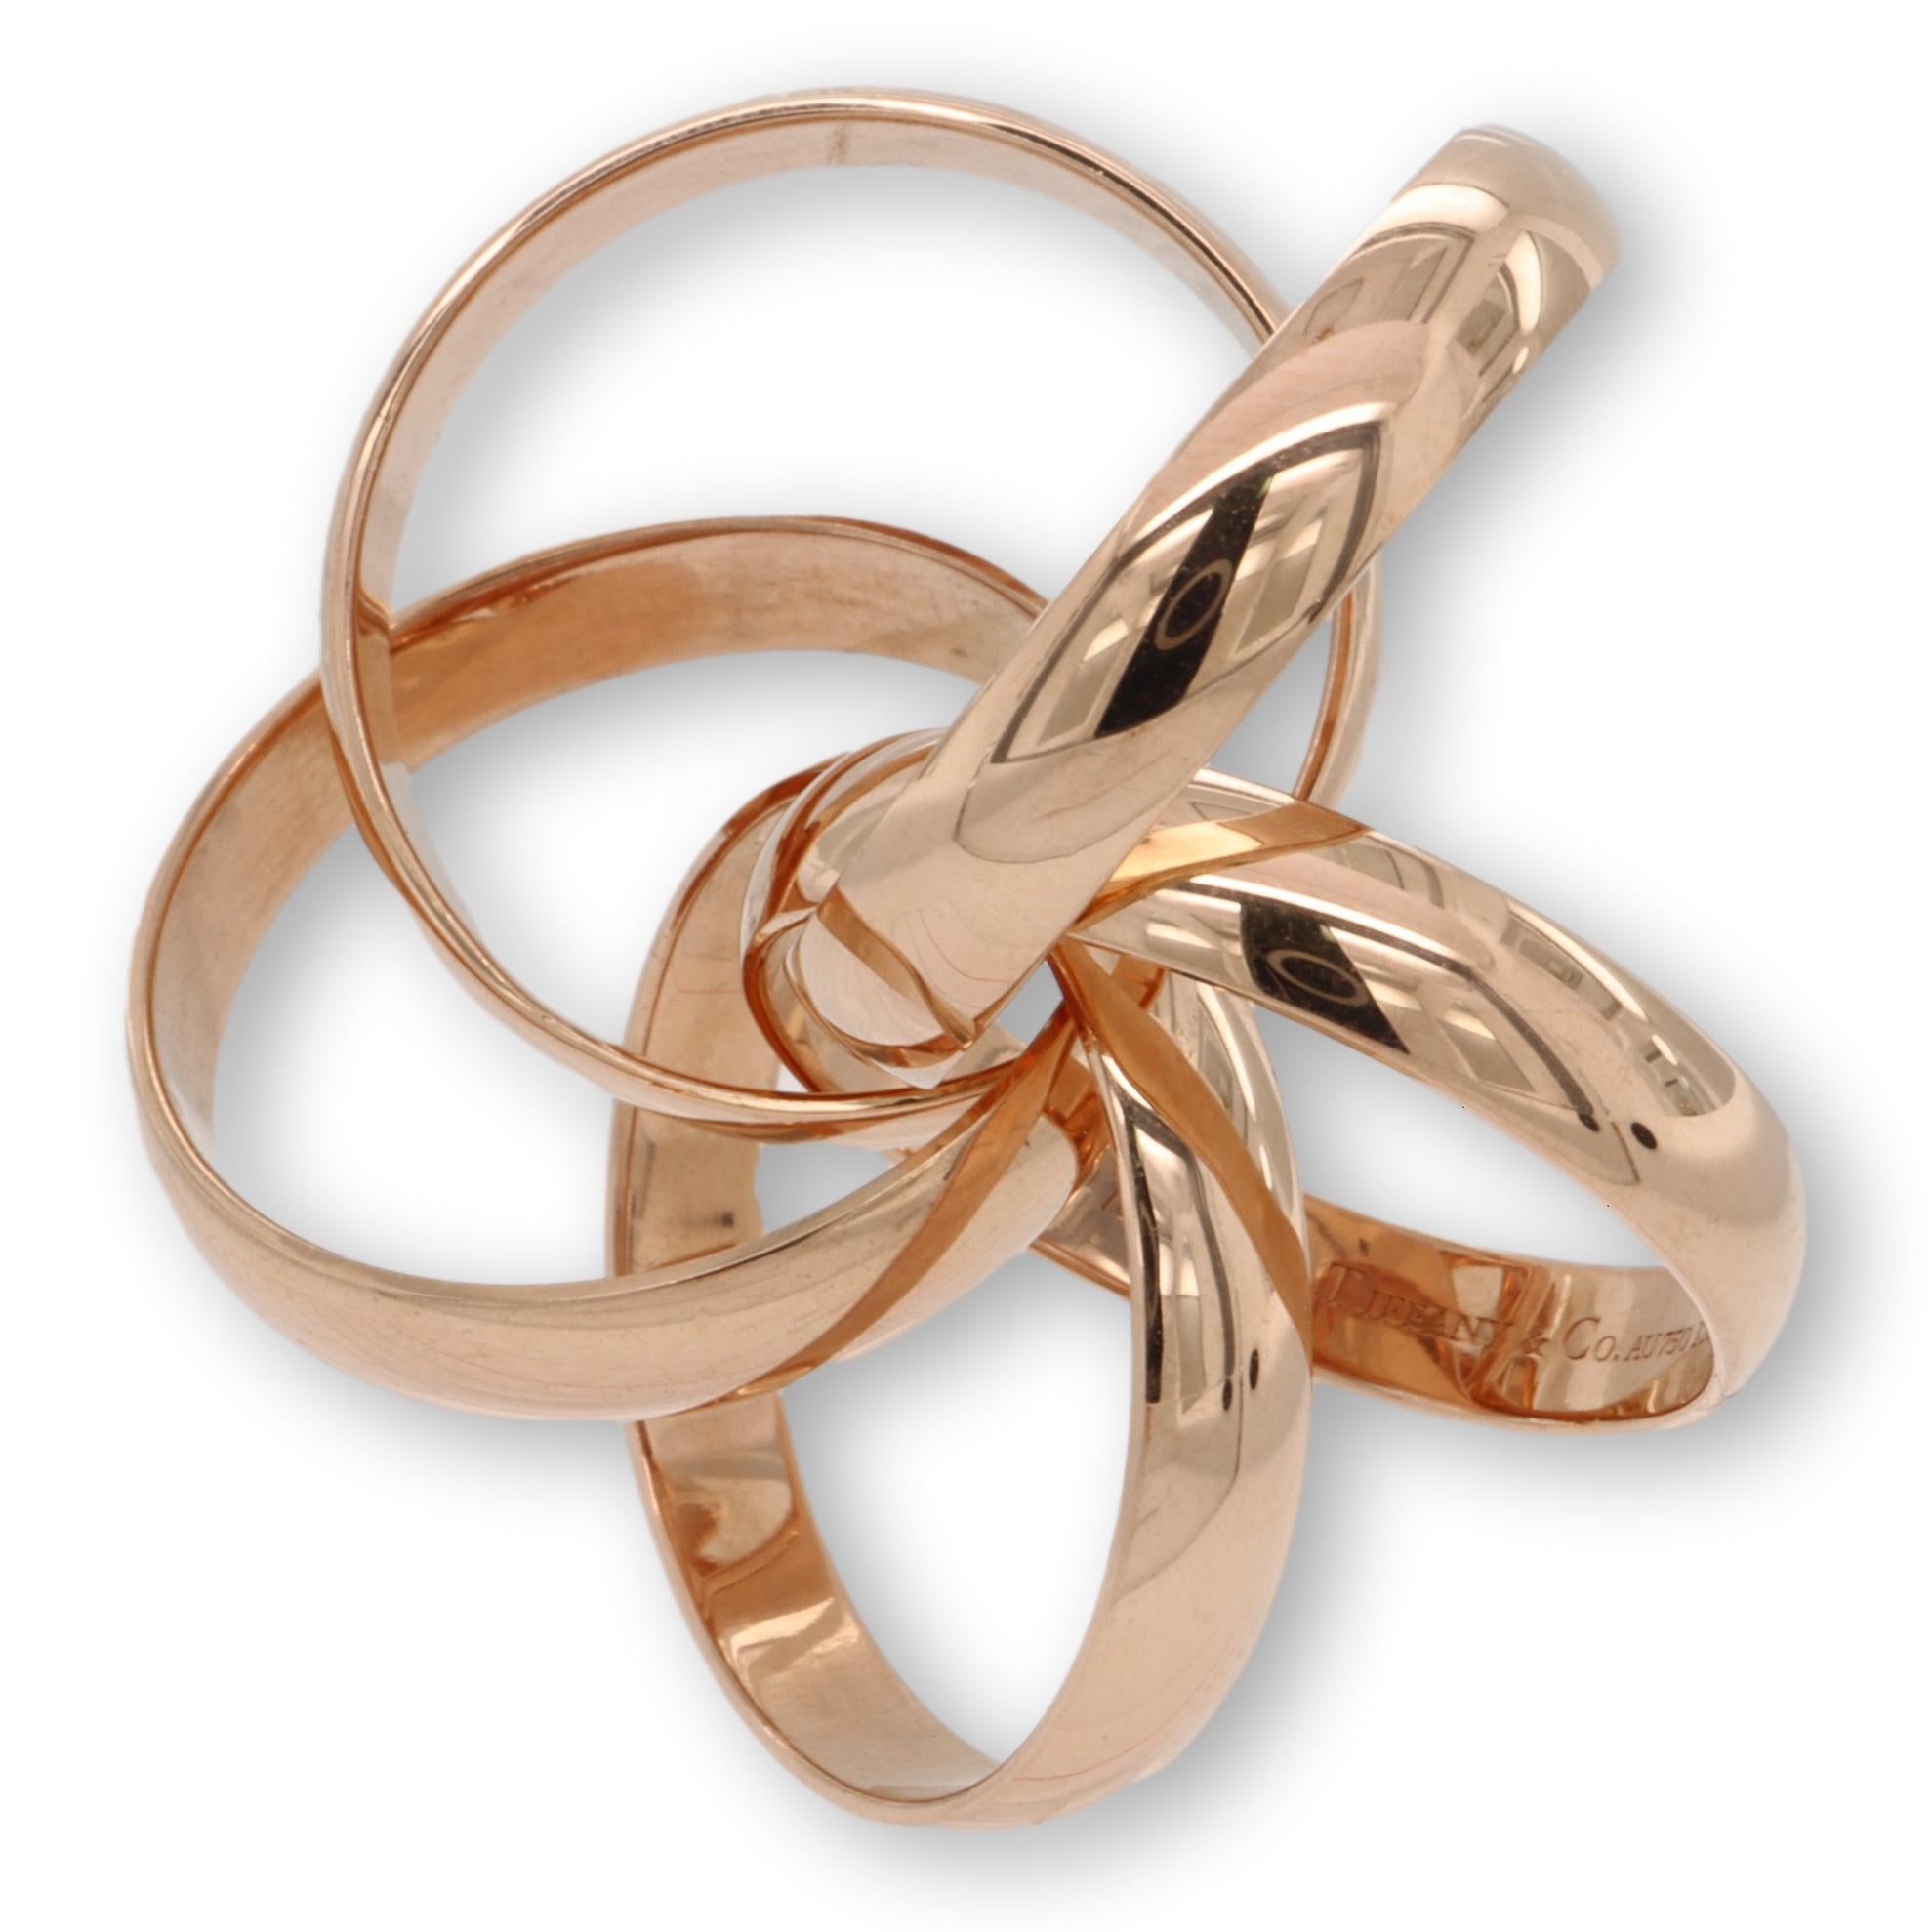 Tiffany & Co. Bague Paloma Picasso Melody à cinq anneaux en or rose 18 carats, taille 5 Excellent état à New York, NY